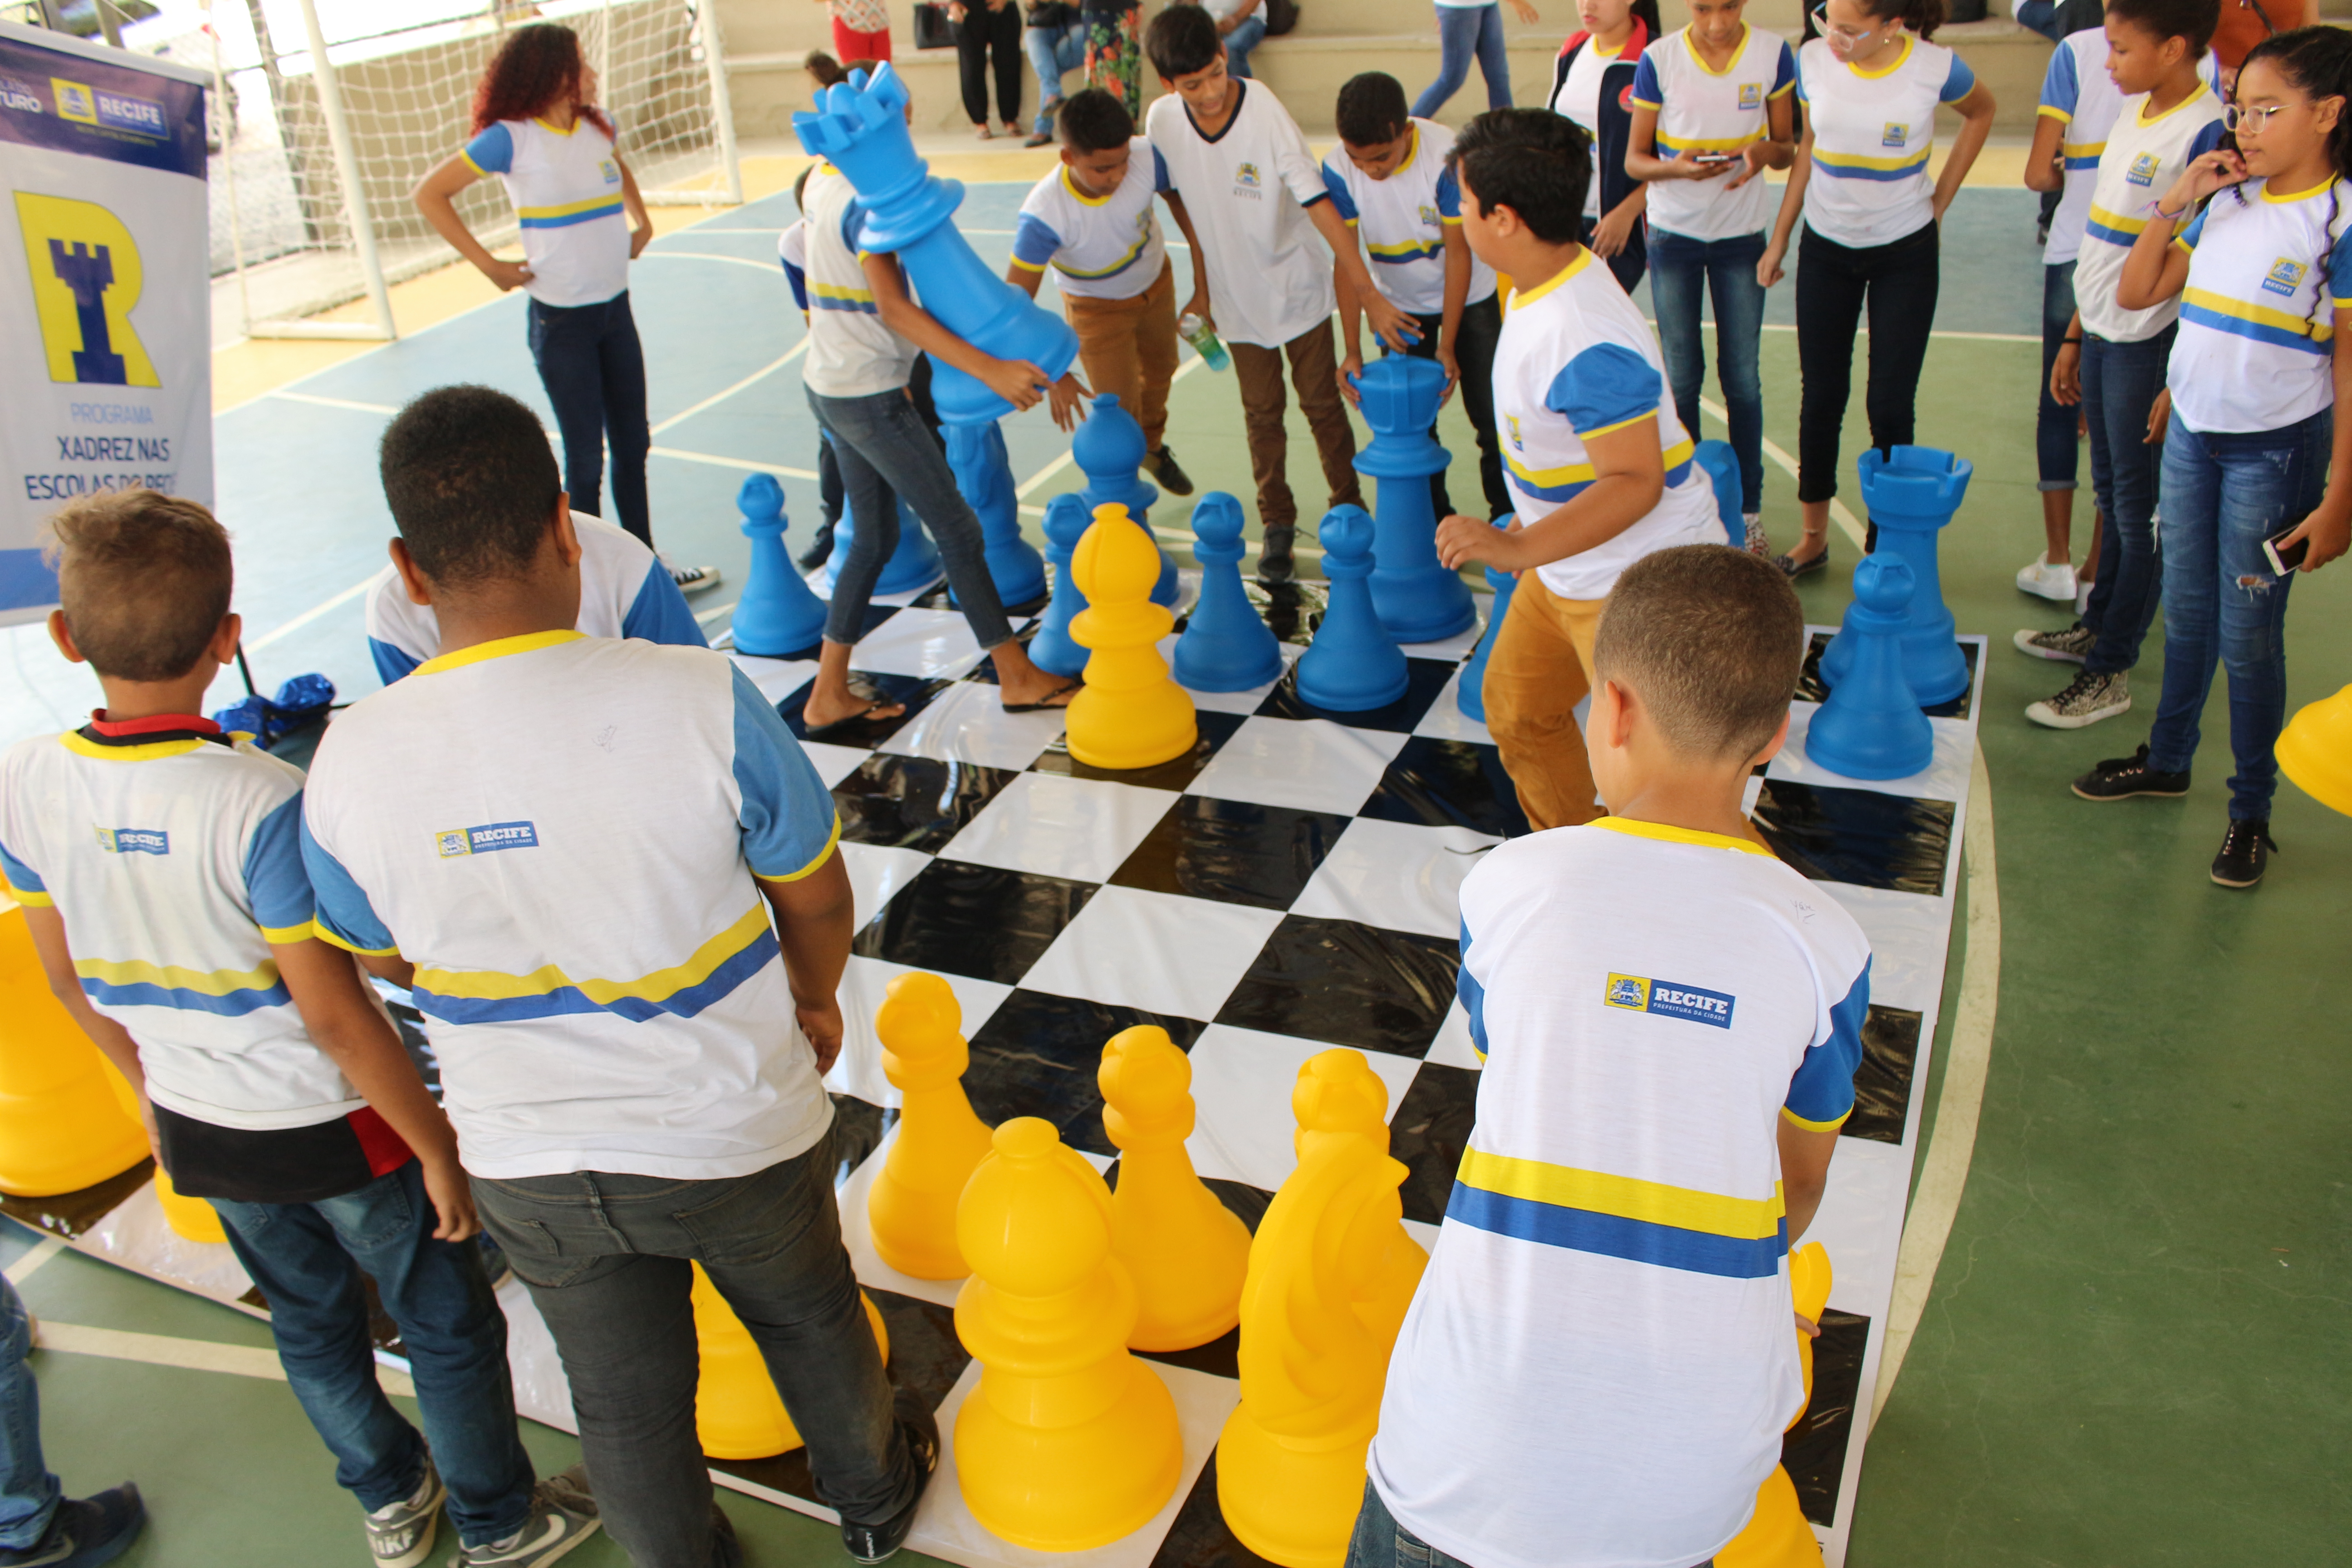 Prefeito Geraldo Julio lança programa Xadrez nas Escolas do Recife